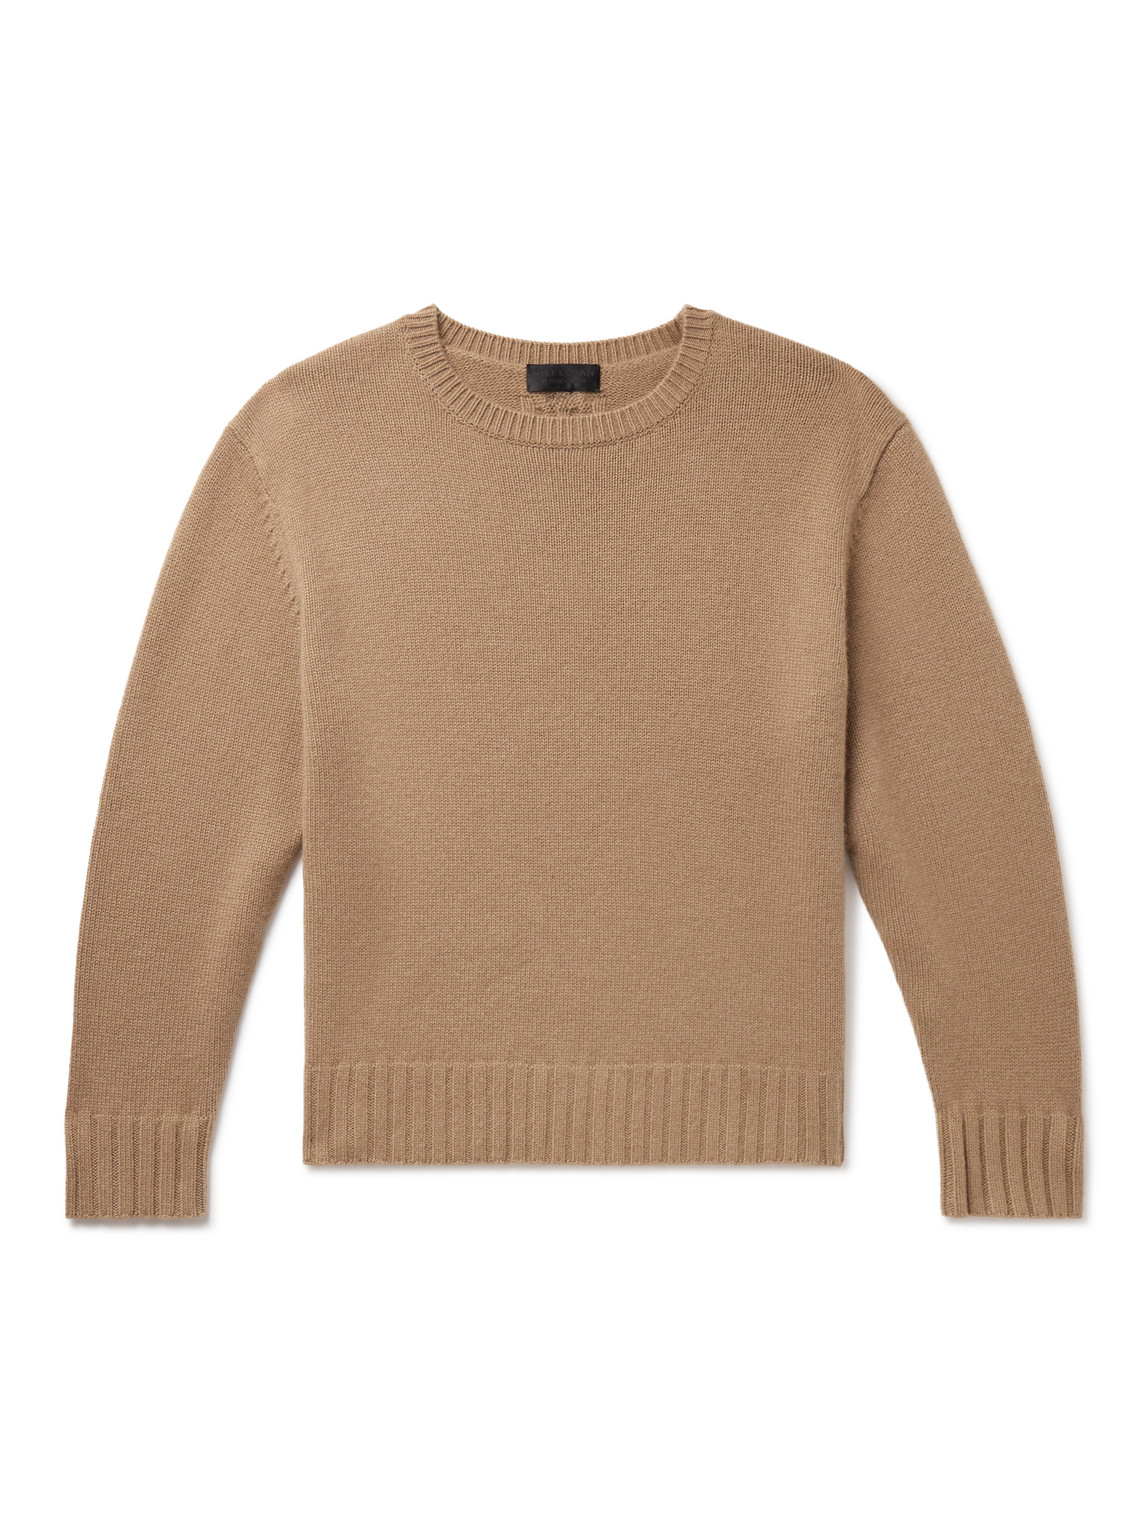 Nili Lotan Boynton Oversized Cashmere Sweater In Brown